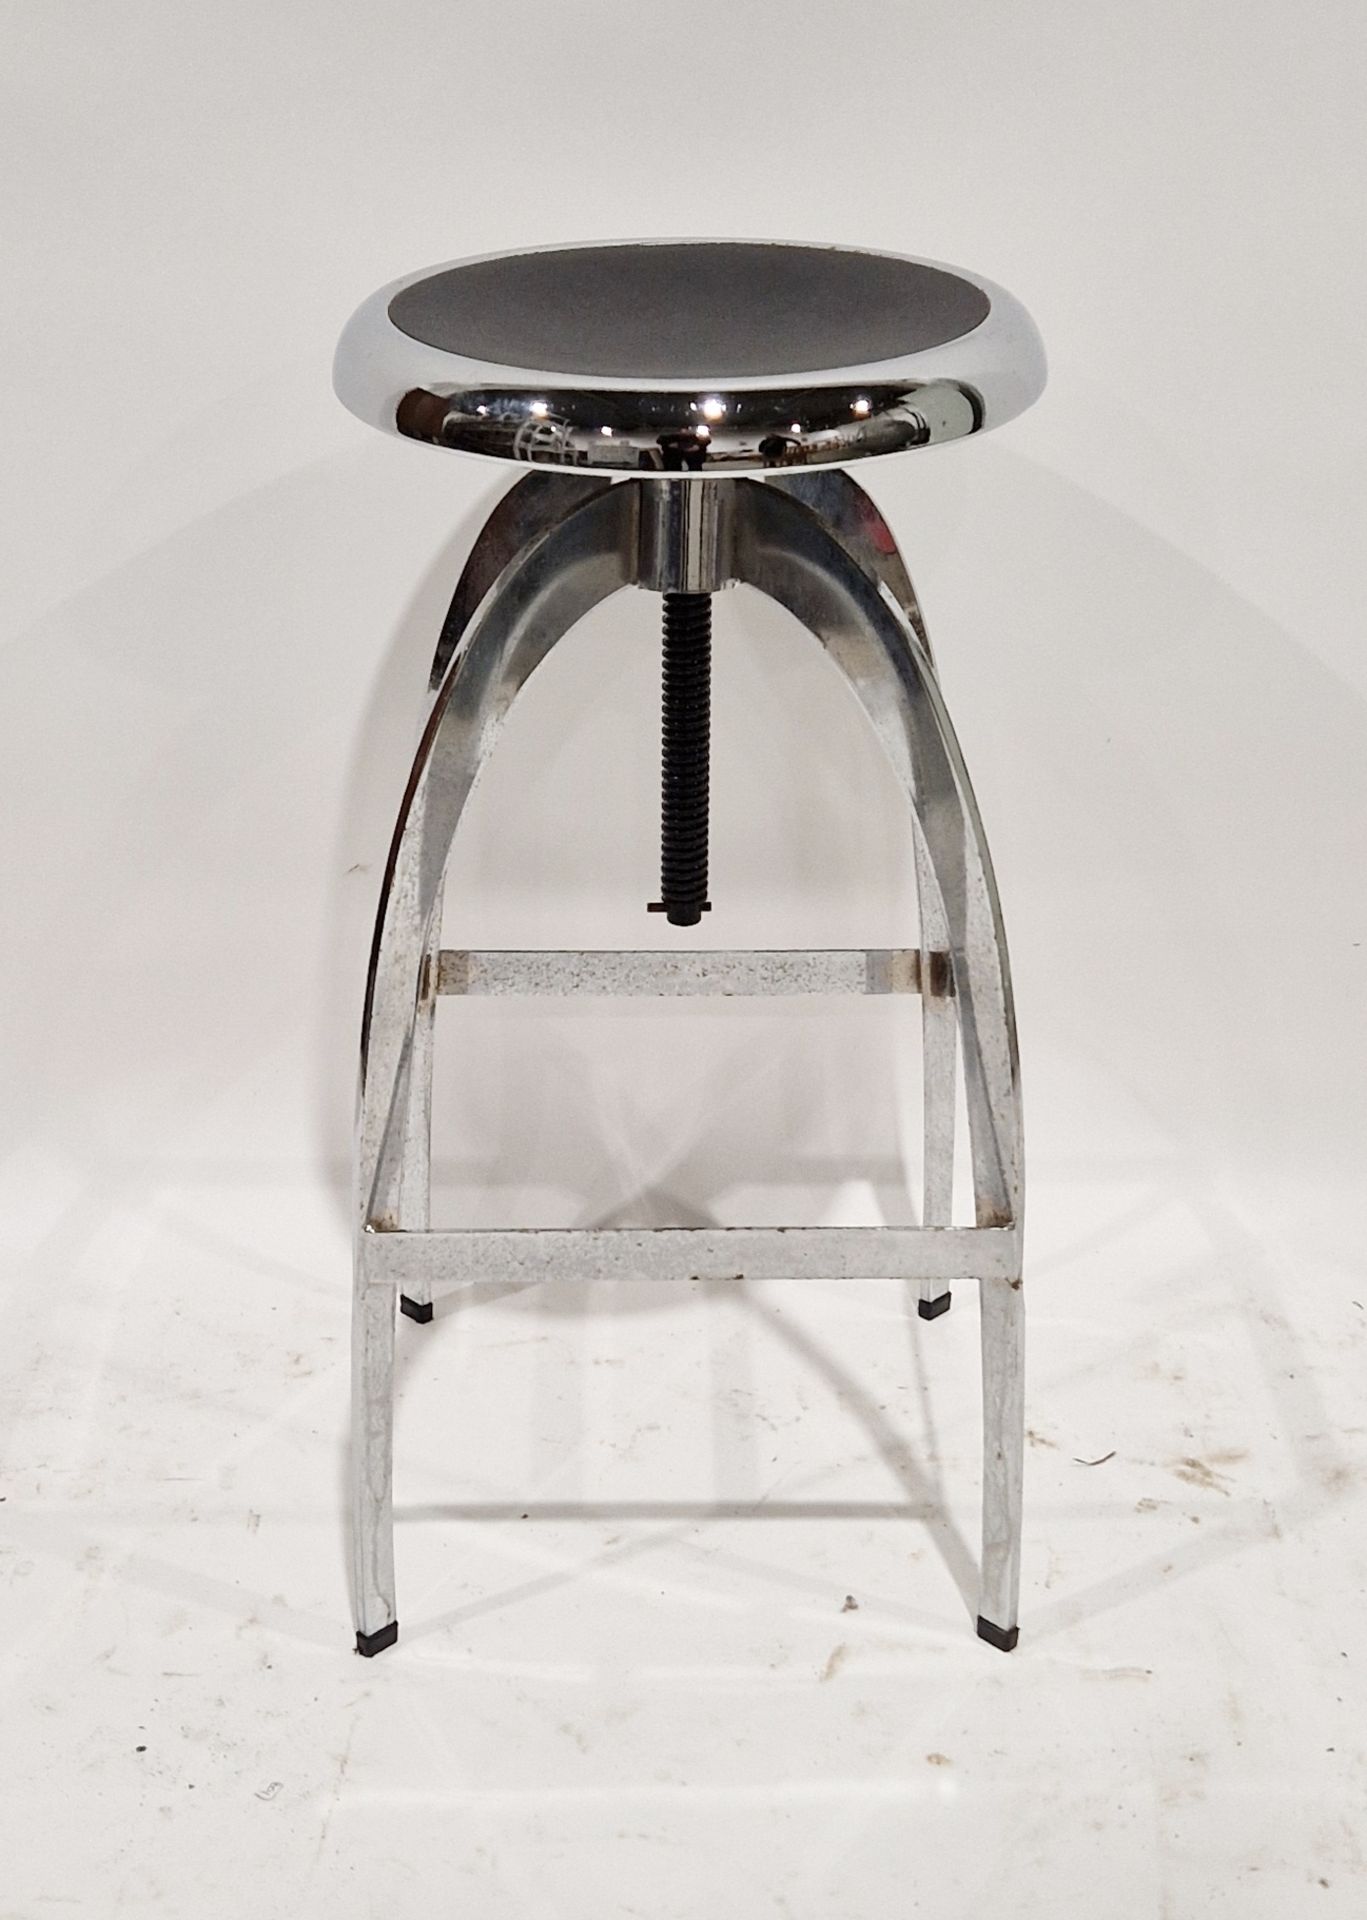 Modern chrome adjustable bar stool, 68cm high